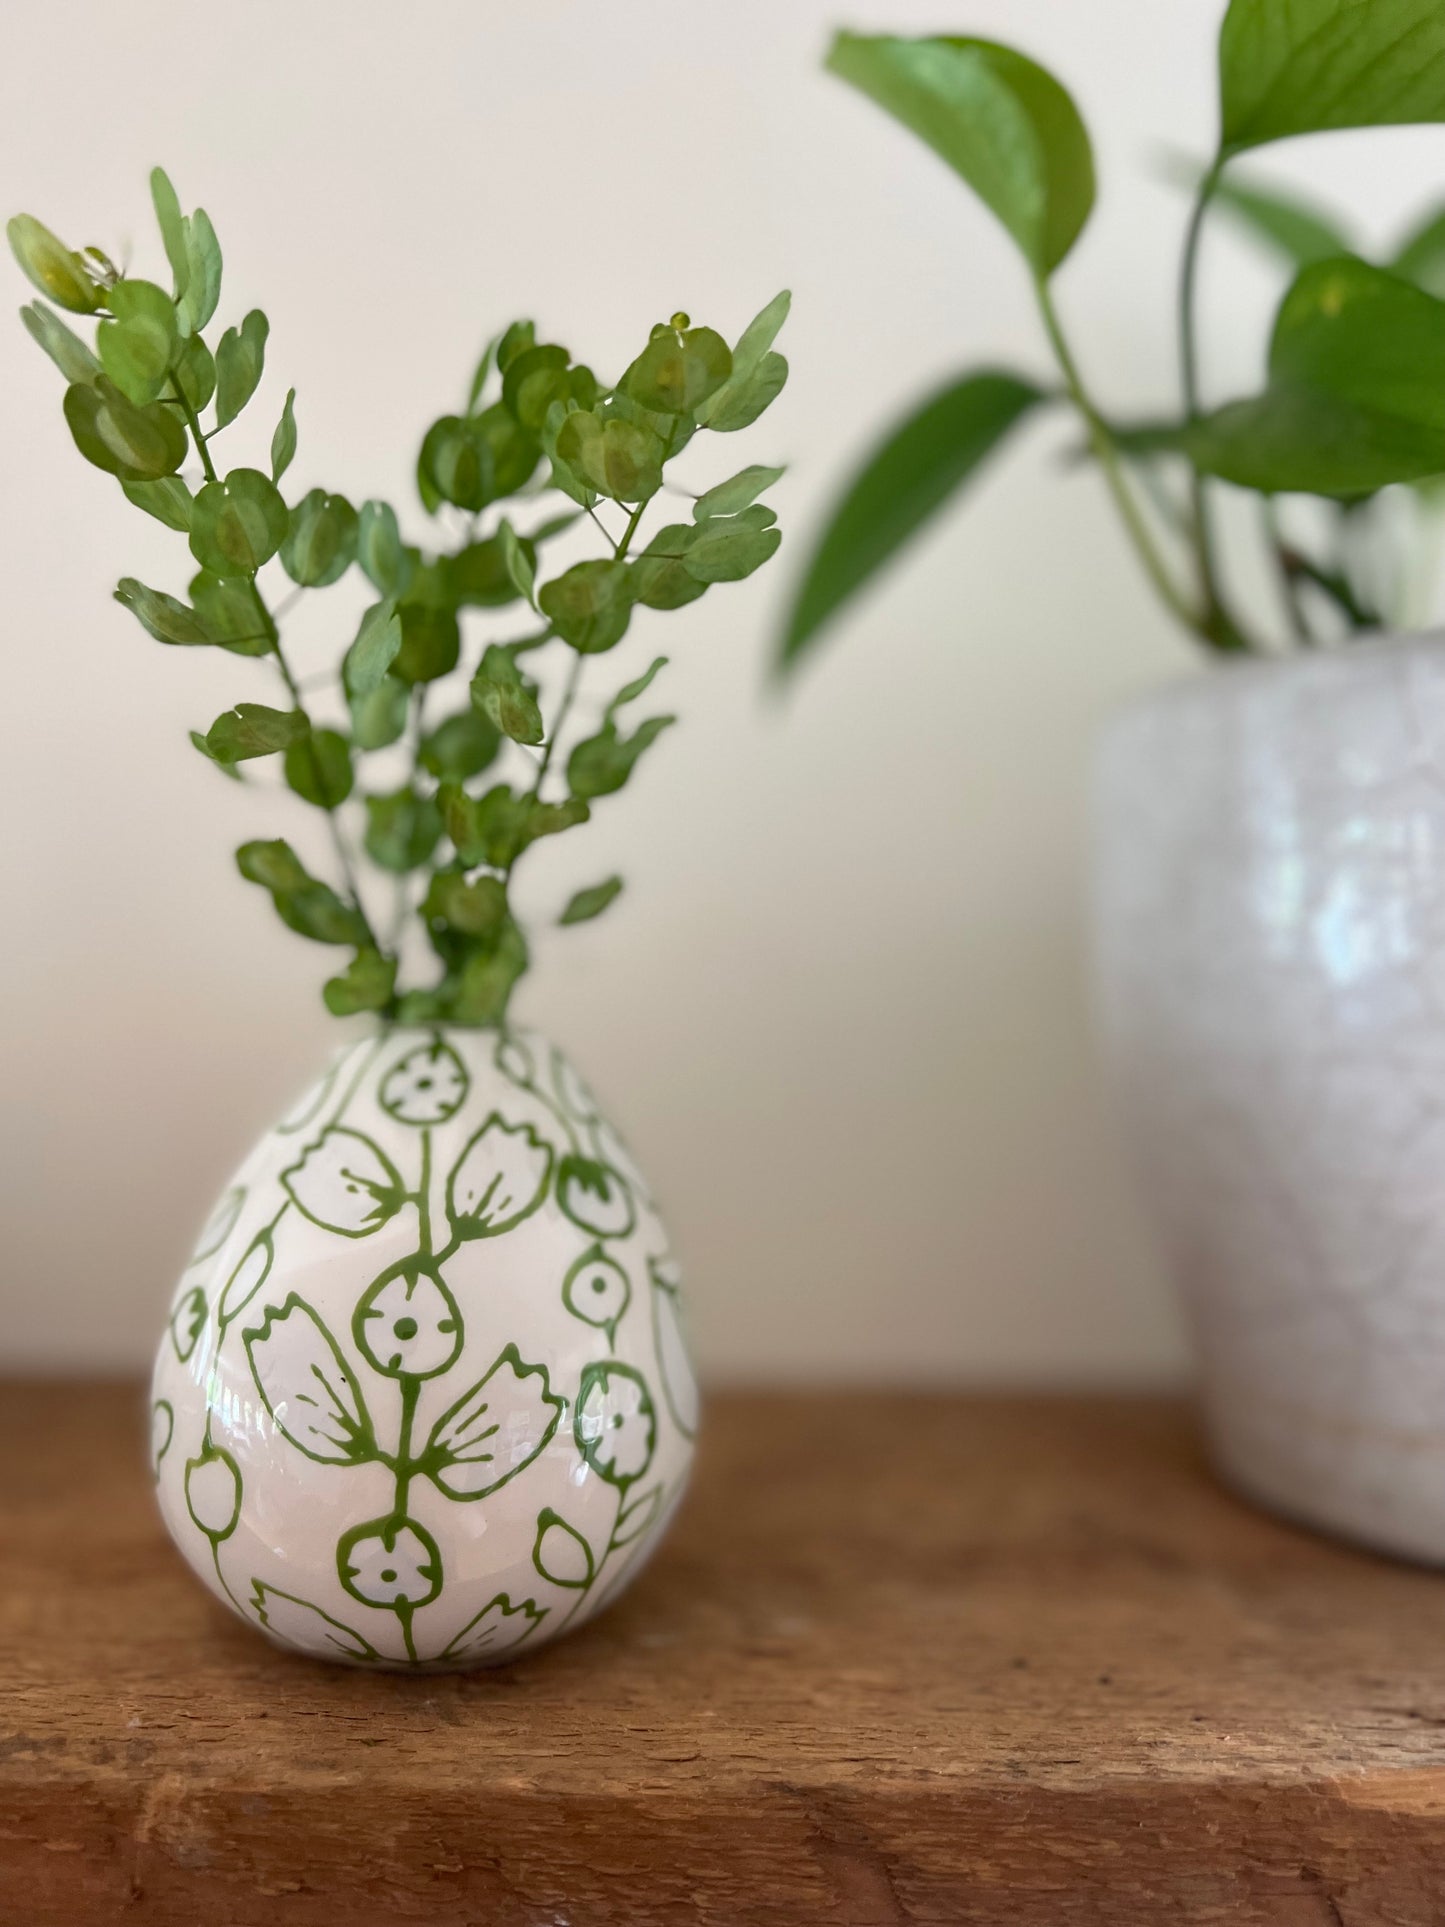 Egg shape bud vase